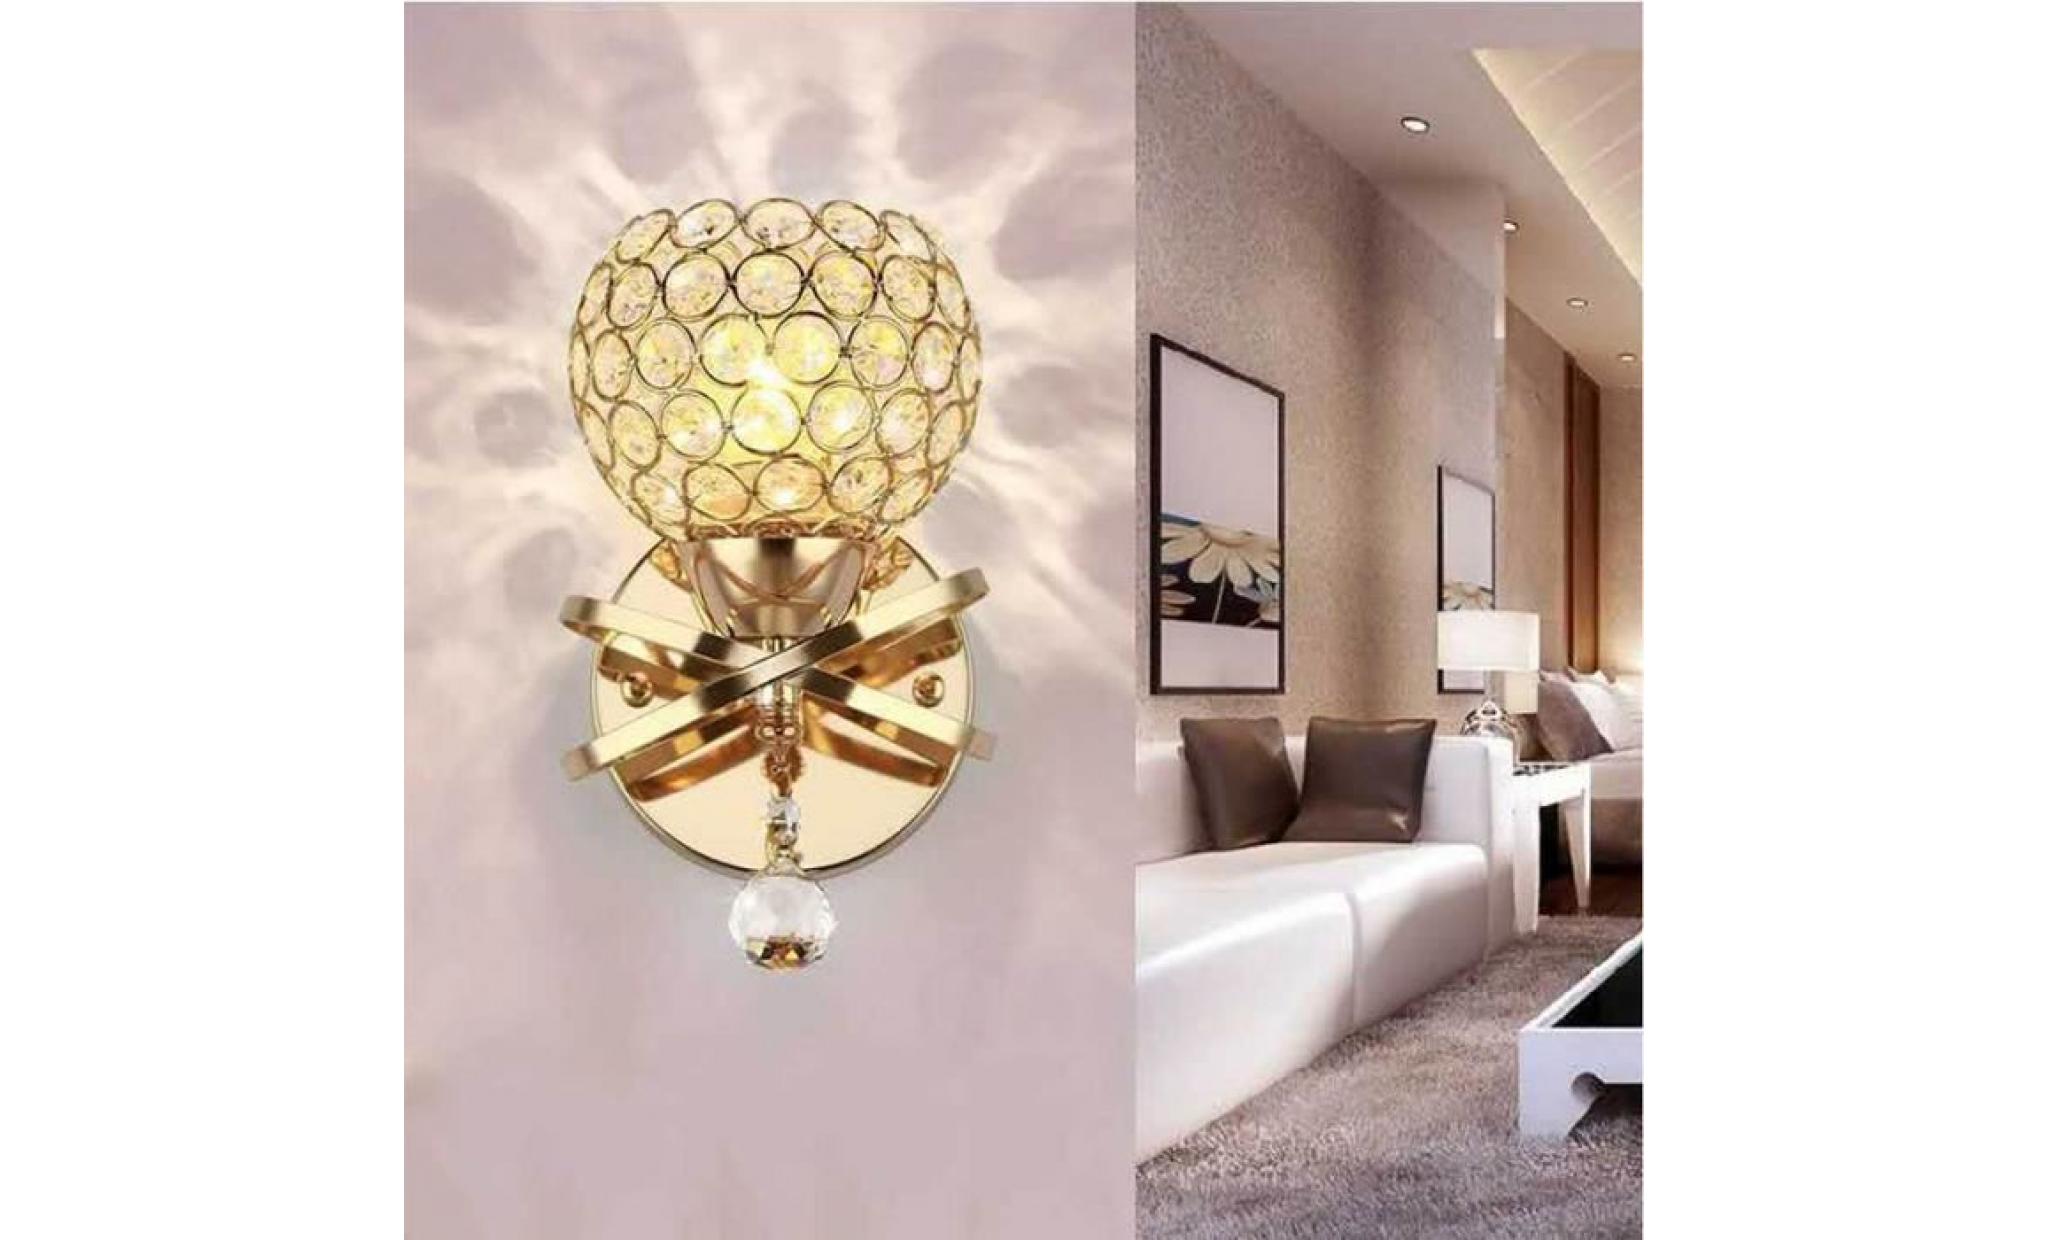 cristal mur lampe chambre aisle living wall chambre lumière holder e14 socket, ampoule non incluse (golden) pas cher